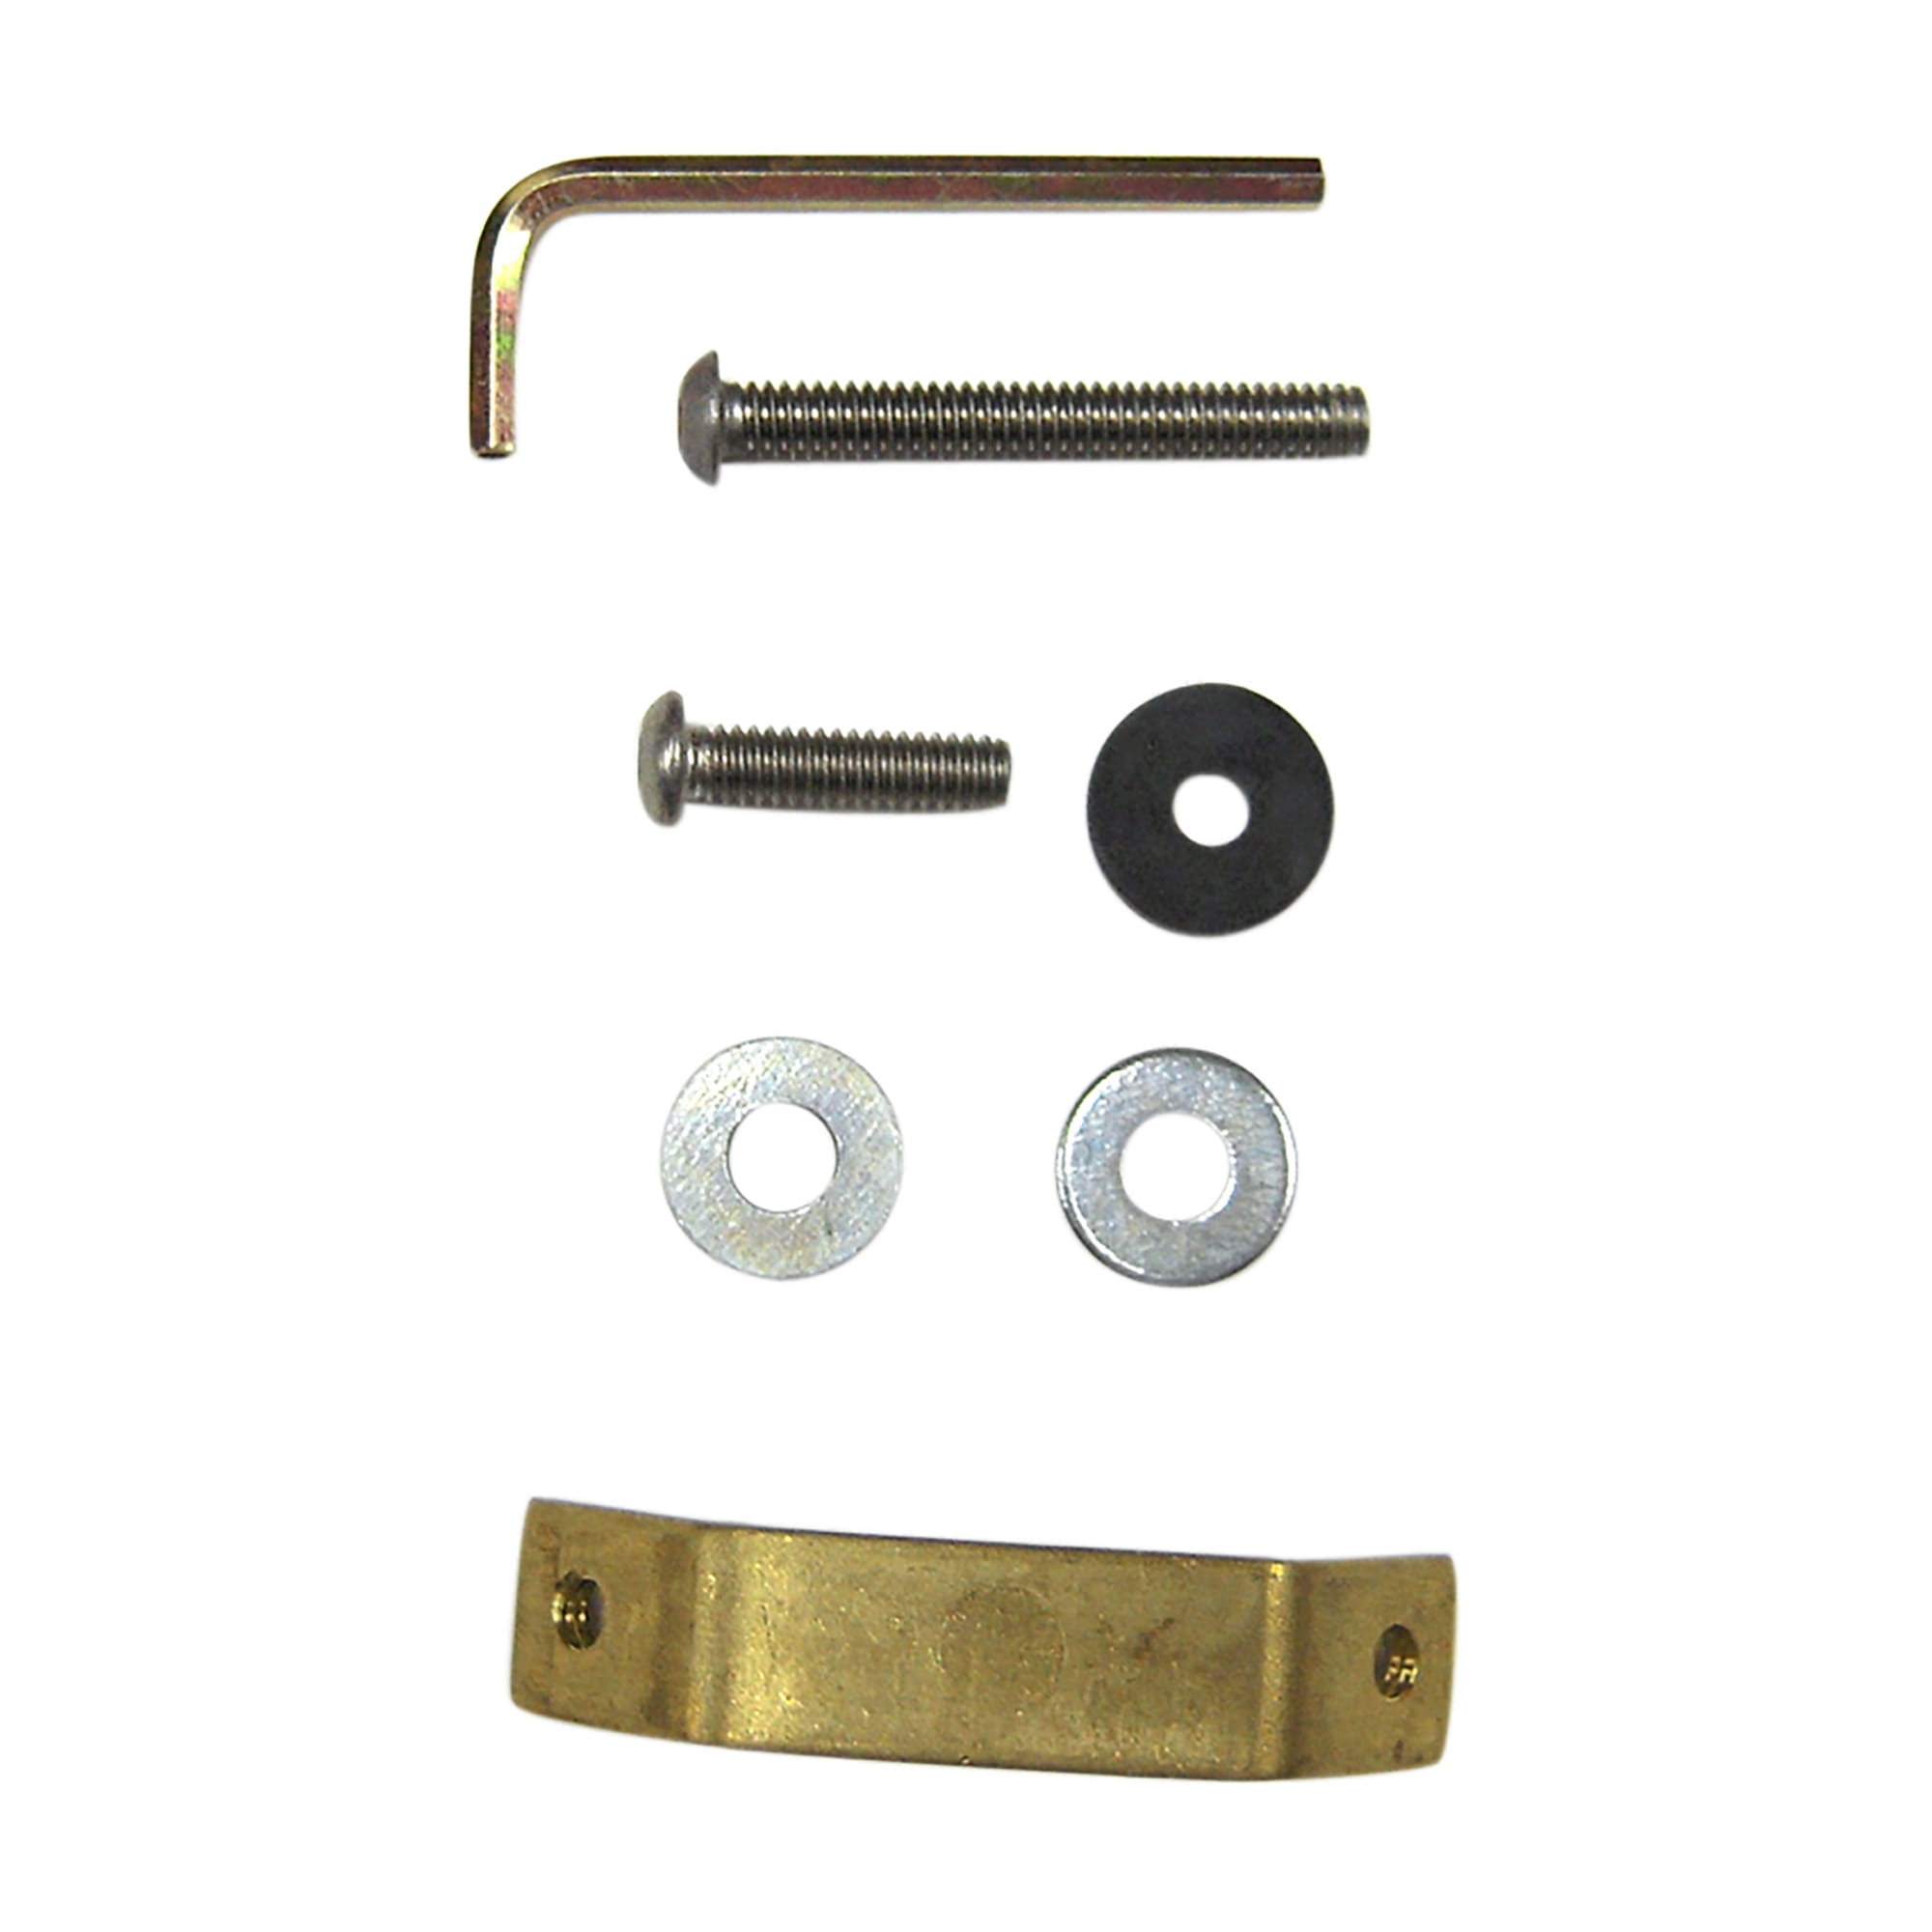 Single Locking Kit #134-Slt